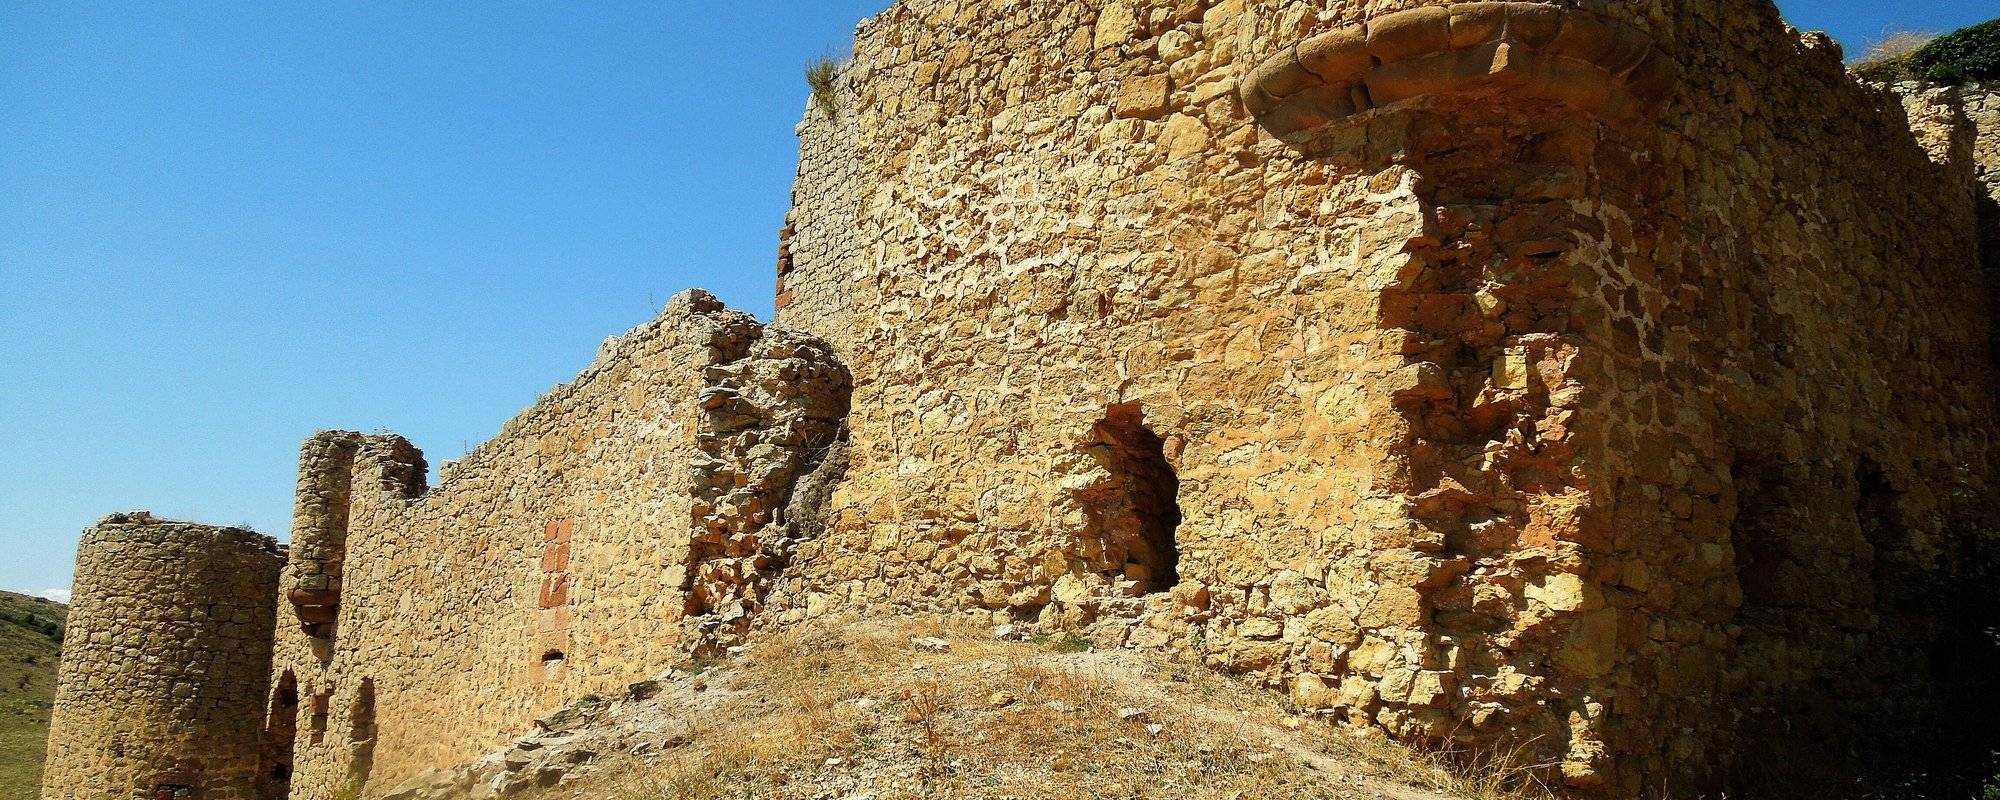 The castle of Caracena